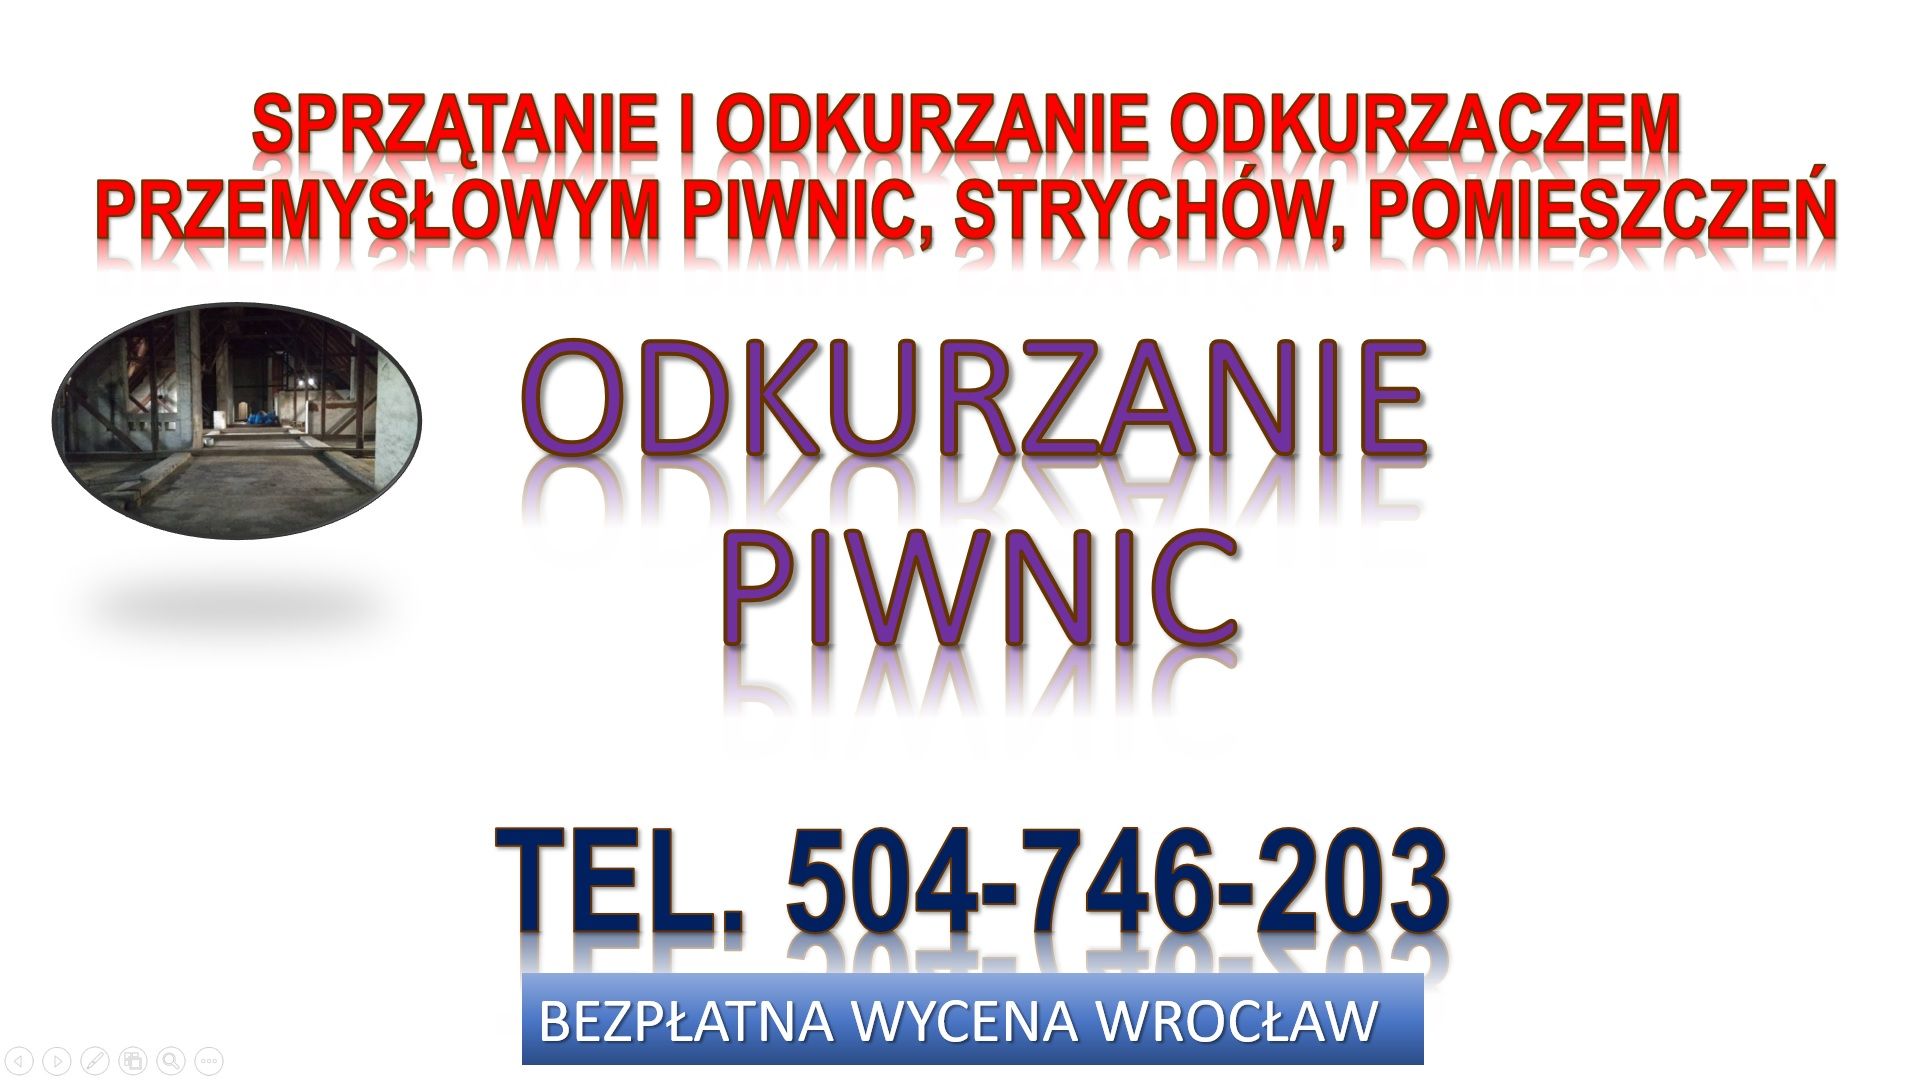 Odkurzanie piwnic,  cennik, tel. 504-746-203, Wrocław, strychu, magazynu Wrocław - Zdjęcie 1